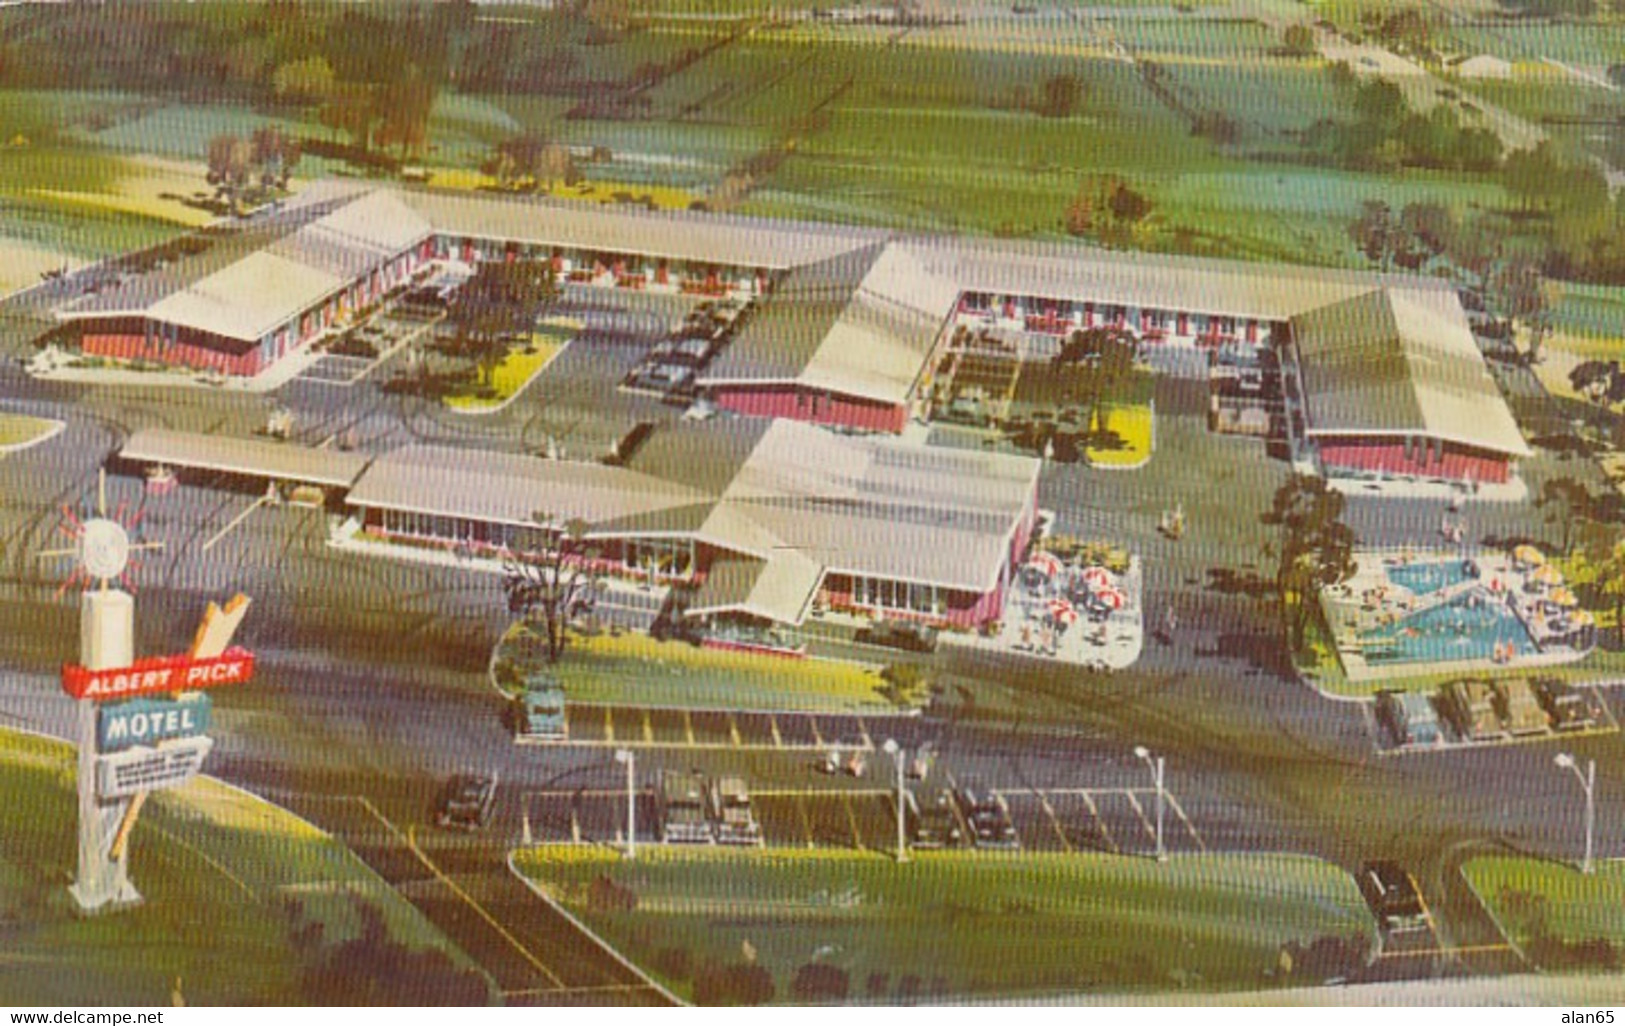 St. Louis Missouri, Route 66 Bypass, Albert Pick Motel, C1950s/60s Vintage Postcard - Route '66'